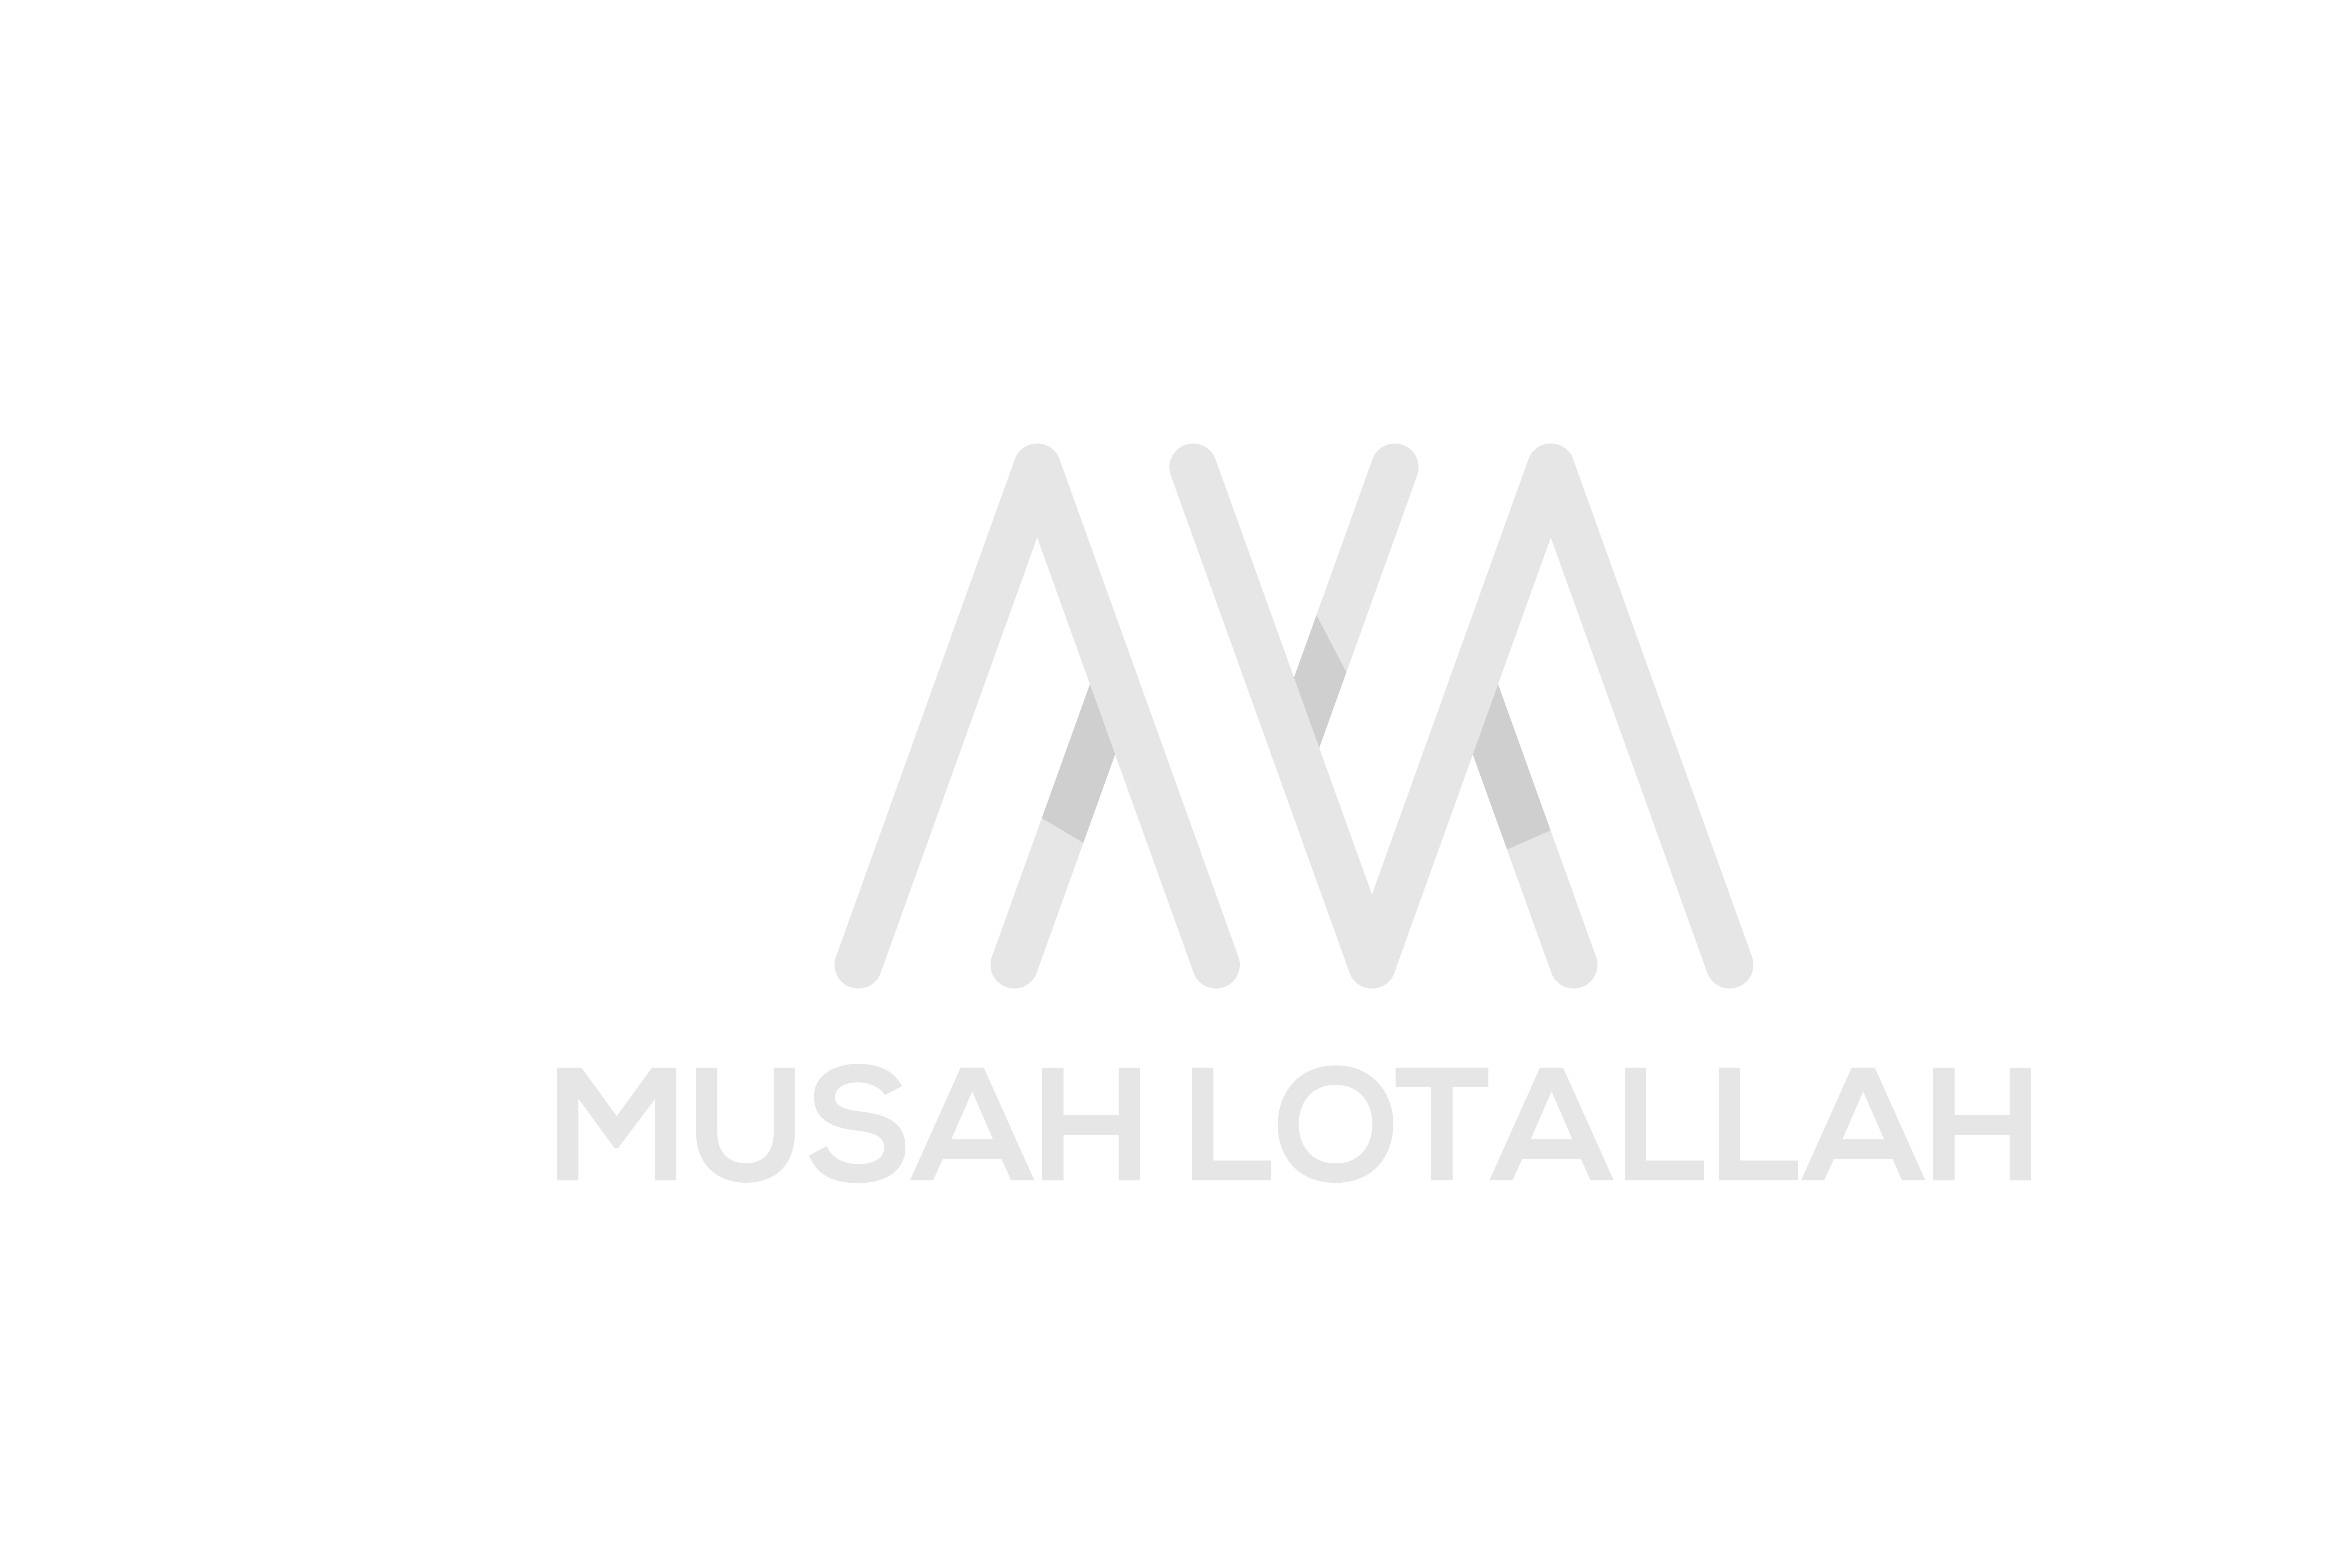 musahlotallah